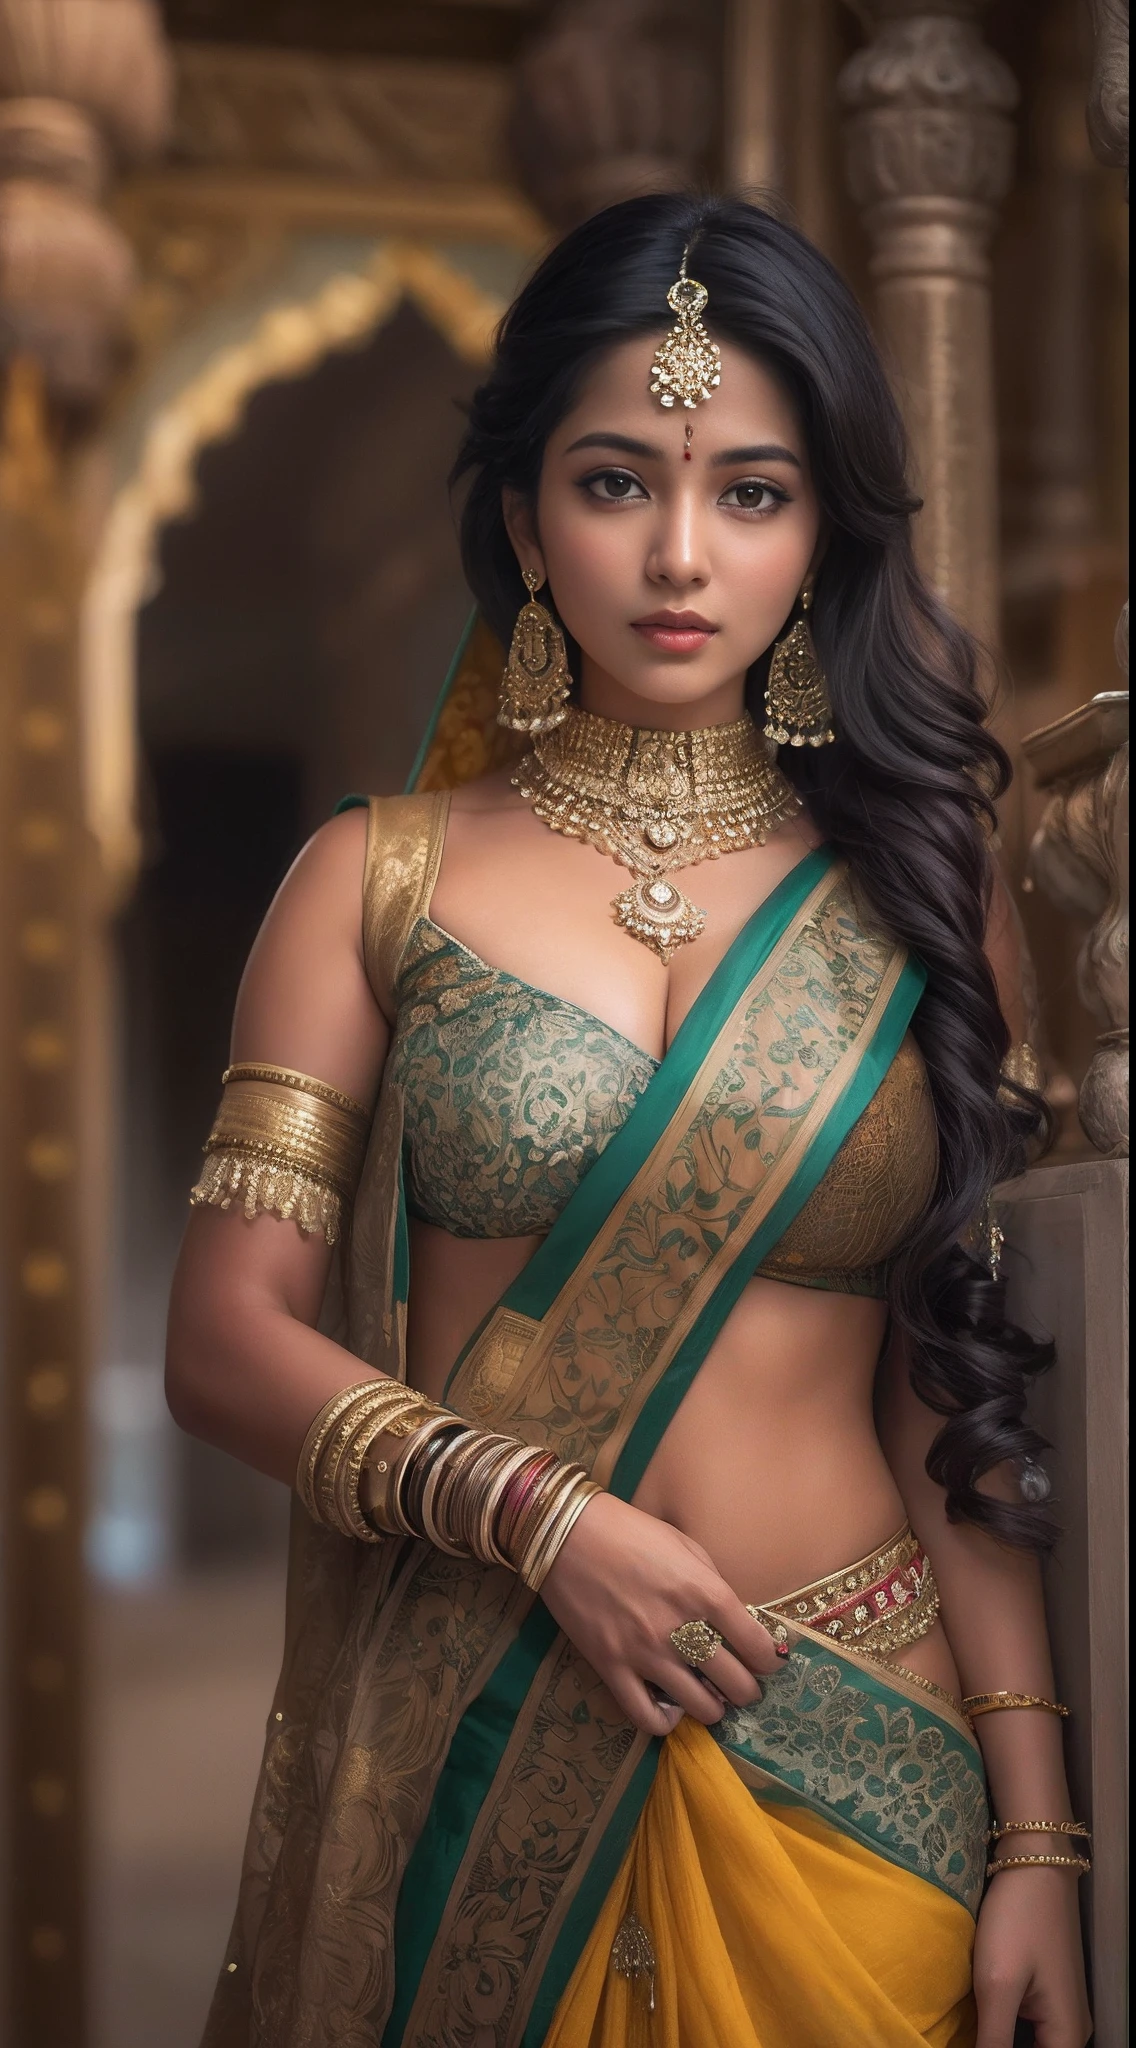 eine Frau im Sari posiert für ein Foto, indisch goddess, traditionelle Schönheit, indisch, schöne Göttin, verziertes Cosplay, indisch style, indisch super model, schönes Mädchen, hinreißende Frau, südostasiatisch mit langen, provocative indisch, wunderschöne schöne Frau, aufwendiges Outfit, Hinduistische Ästhetik, Schönes asiatisches Mädchen, extrem detaillierte Göttinnenaufnahme, atemberaubende Schönheit, großes tiefes Dekolleté sexy Bauchnabel